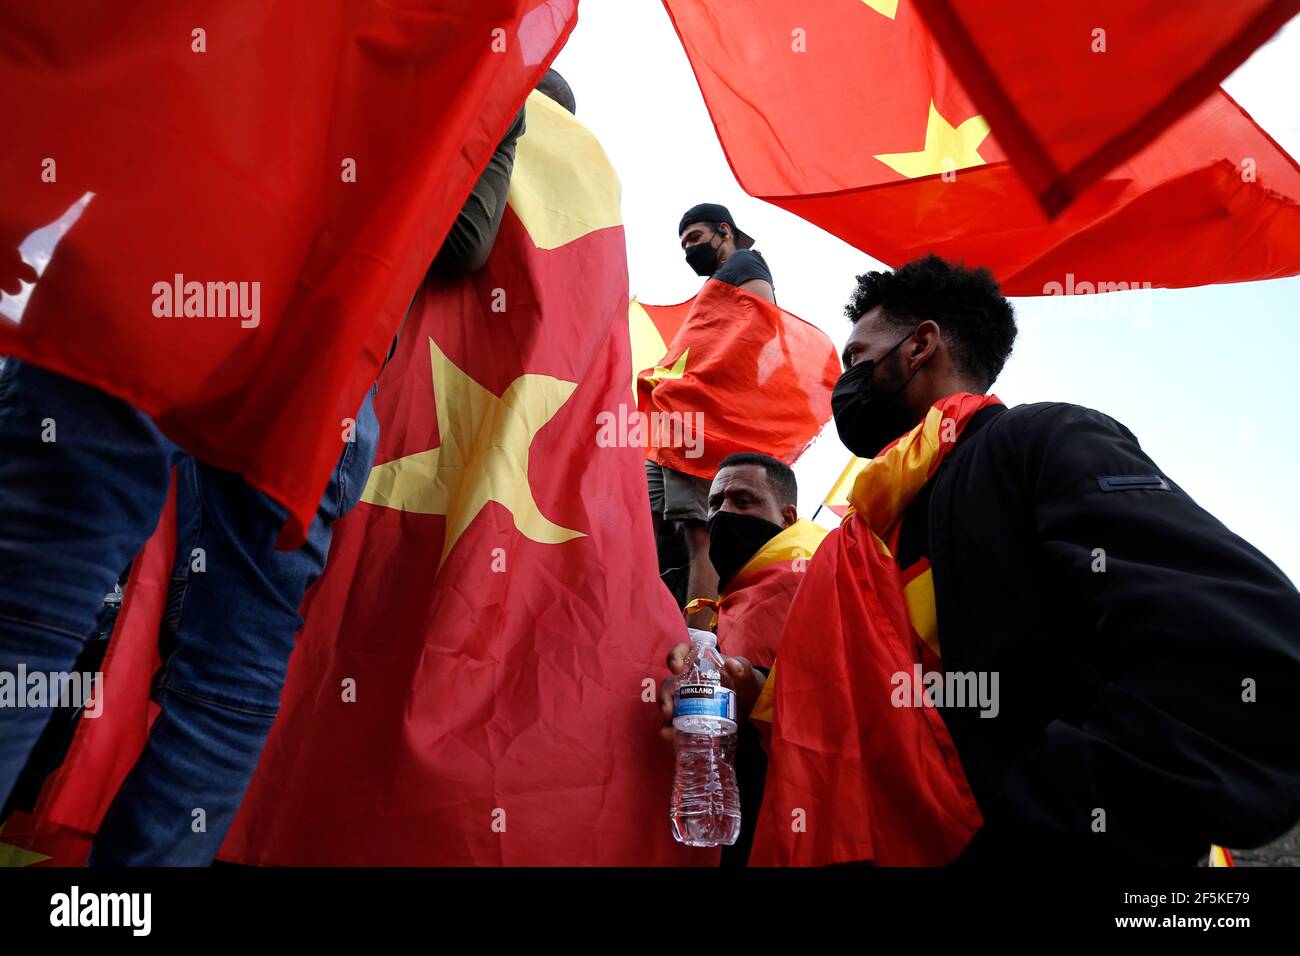 Durante la manifestación, los manifestantes se vieron encallados en las banderas de Tigray.los manifestantes se marcharon en manifestación contra la ocupación militar de Tigray por Eritrea tras la prohibición del gobierno etíope de entrar a periodistas y trabajadores humanitarios en su Estado de Tigray y las denuncias de una crisis humanitaria y genocidio. Además, el gobierno niega la muerte de Tigrayen, así como la presencia de los militares de la cercana Eritrea en la región. Foto de stock